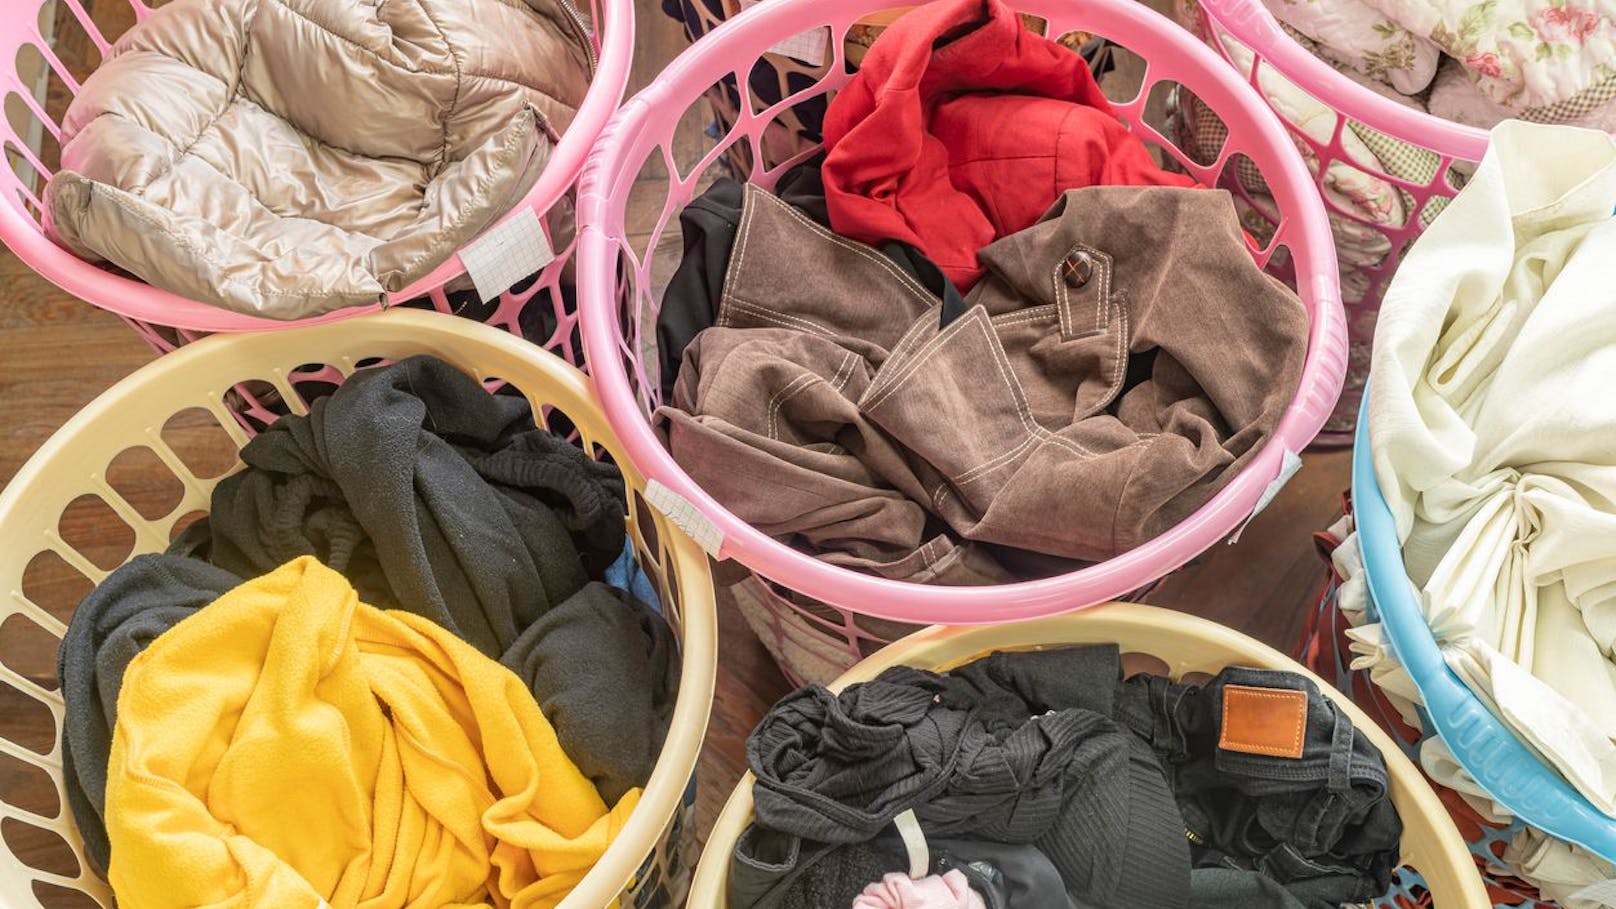 Sortiere deine Wäsche nicht nur nach Farbe, sondern auch nach der Waschtemperatur. Slips und Boxershorts sollten zum Beispiel bei 60 Grad gewaschen werden. Bei der Empfehlung einer geringeren Temperatur solltest du dringend einen Hygienespüler verwenden. 